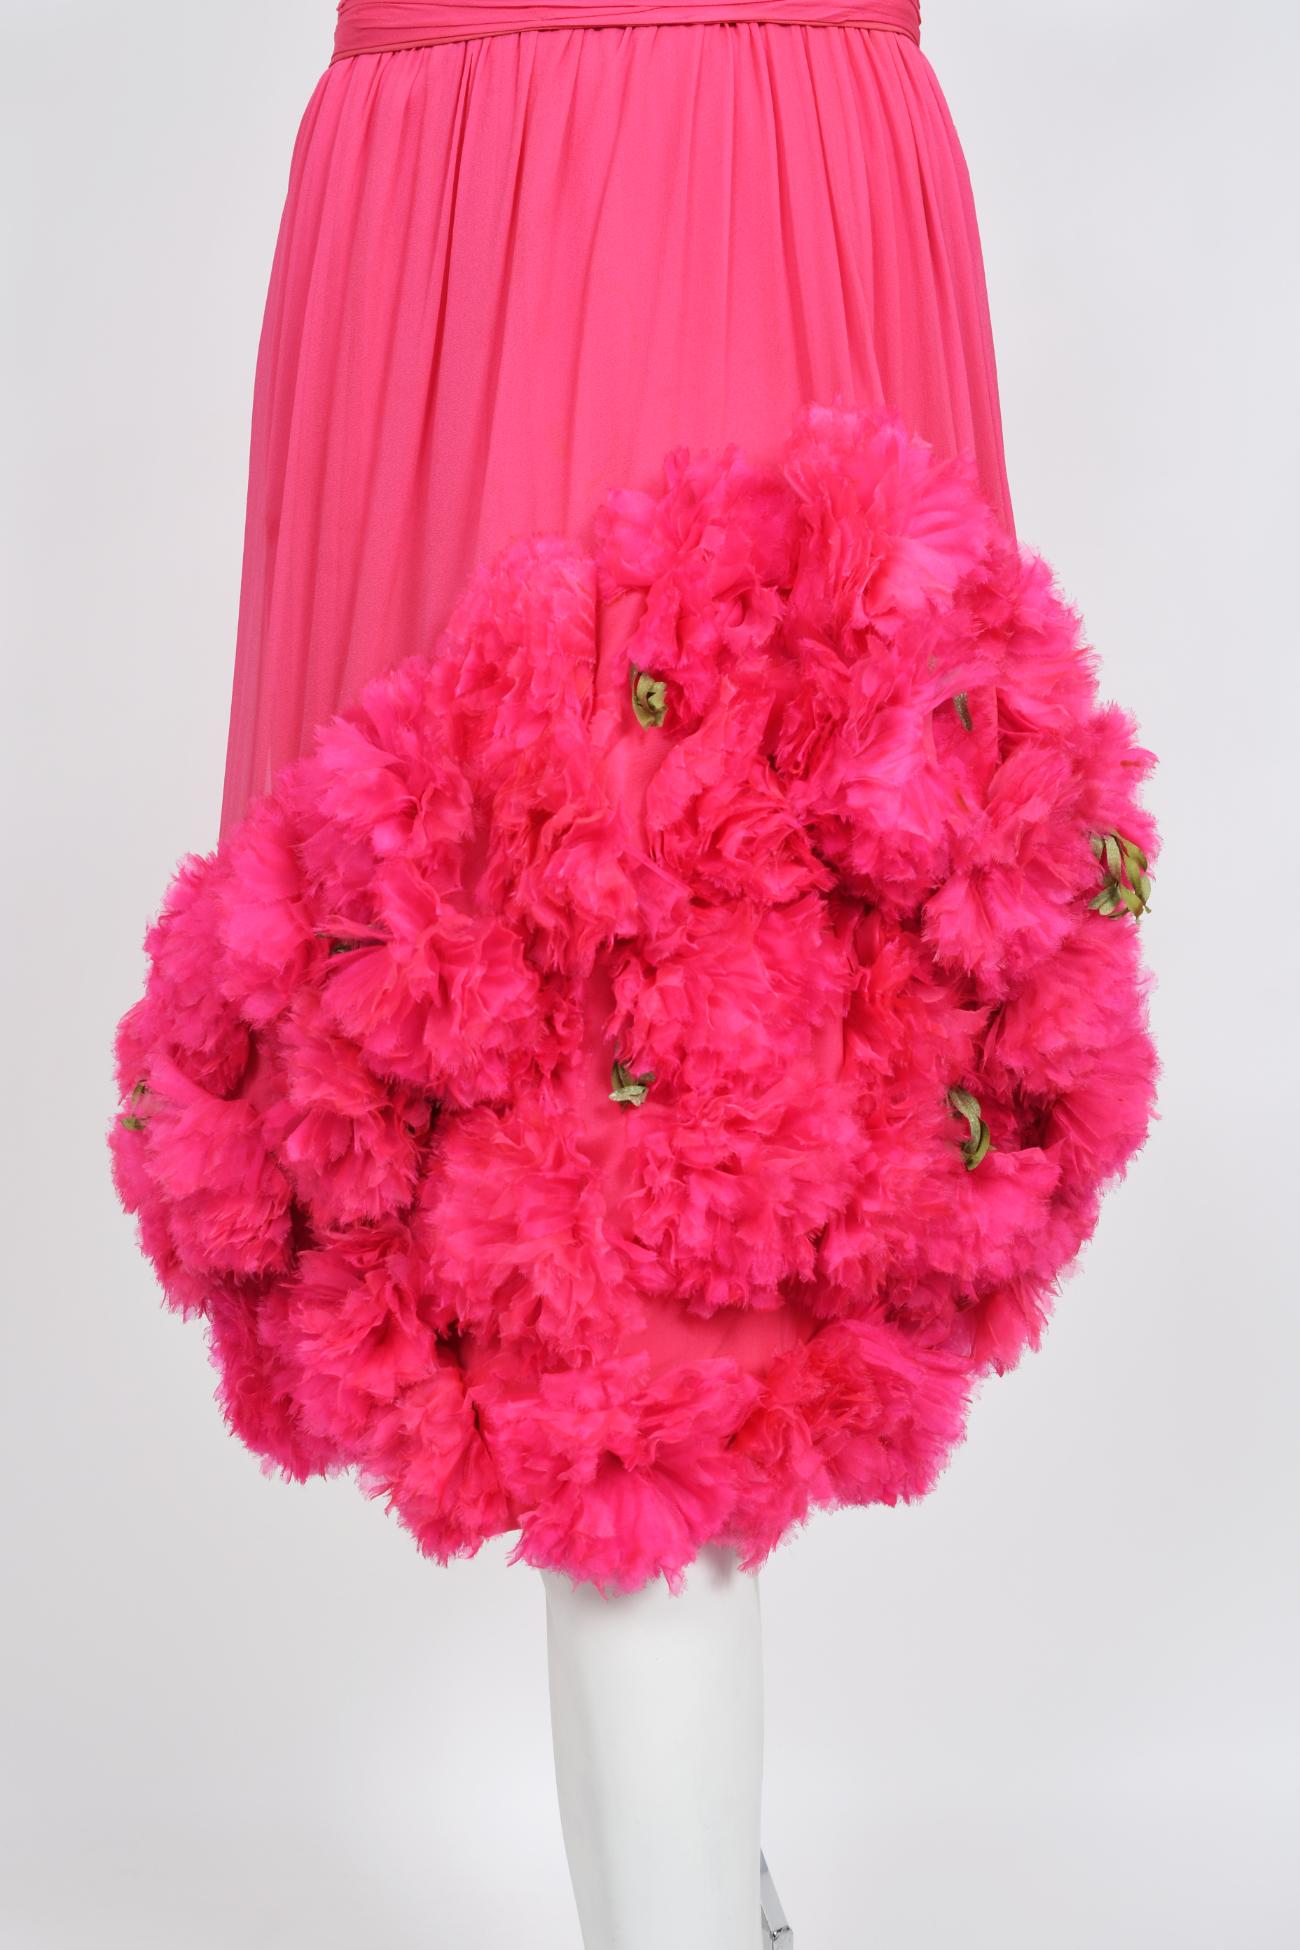 Vintage 1950's Ceil Chapman Pink Silk Chiffon Floral Appliqué Cocktail Dress  For Sale 7